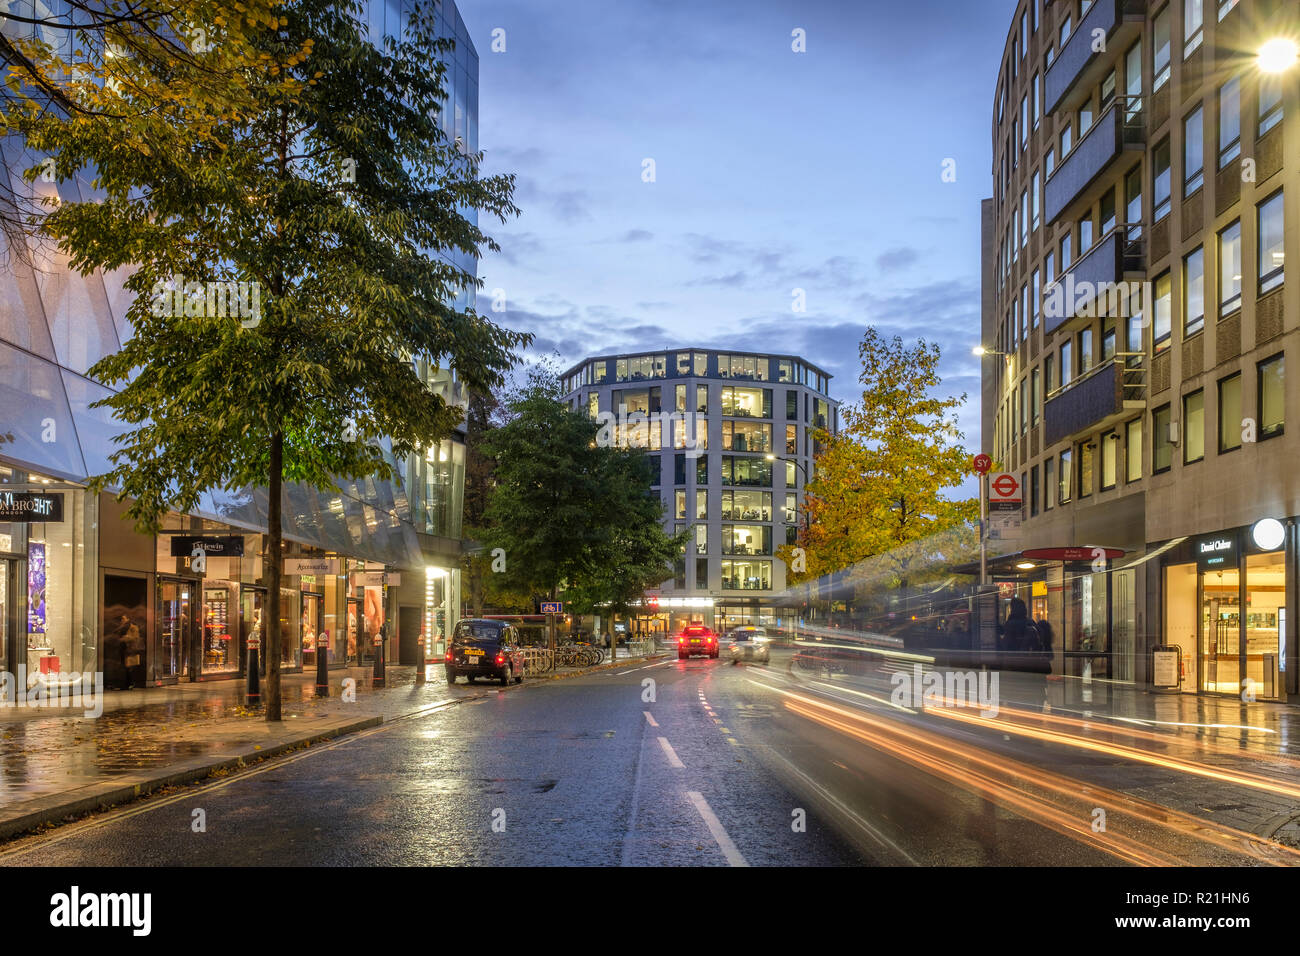 England, London, Cheapside, eine neue Änderung - Verkehr Wanderwege in der Nacht Stockfoto